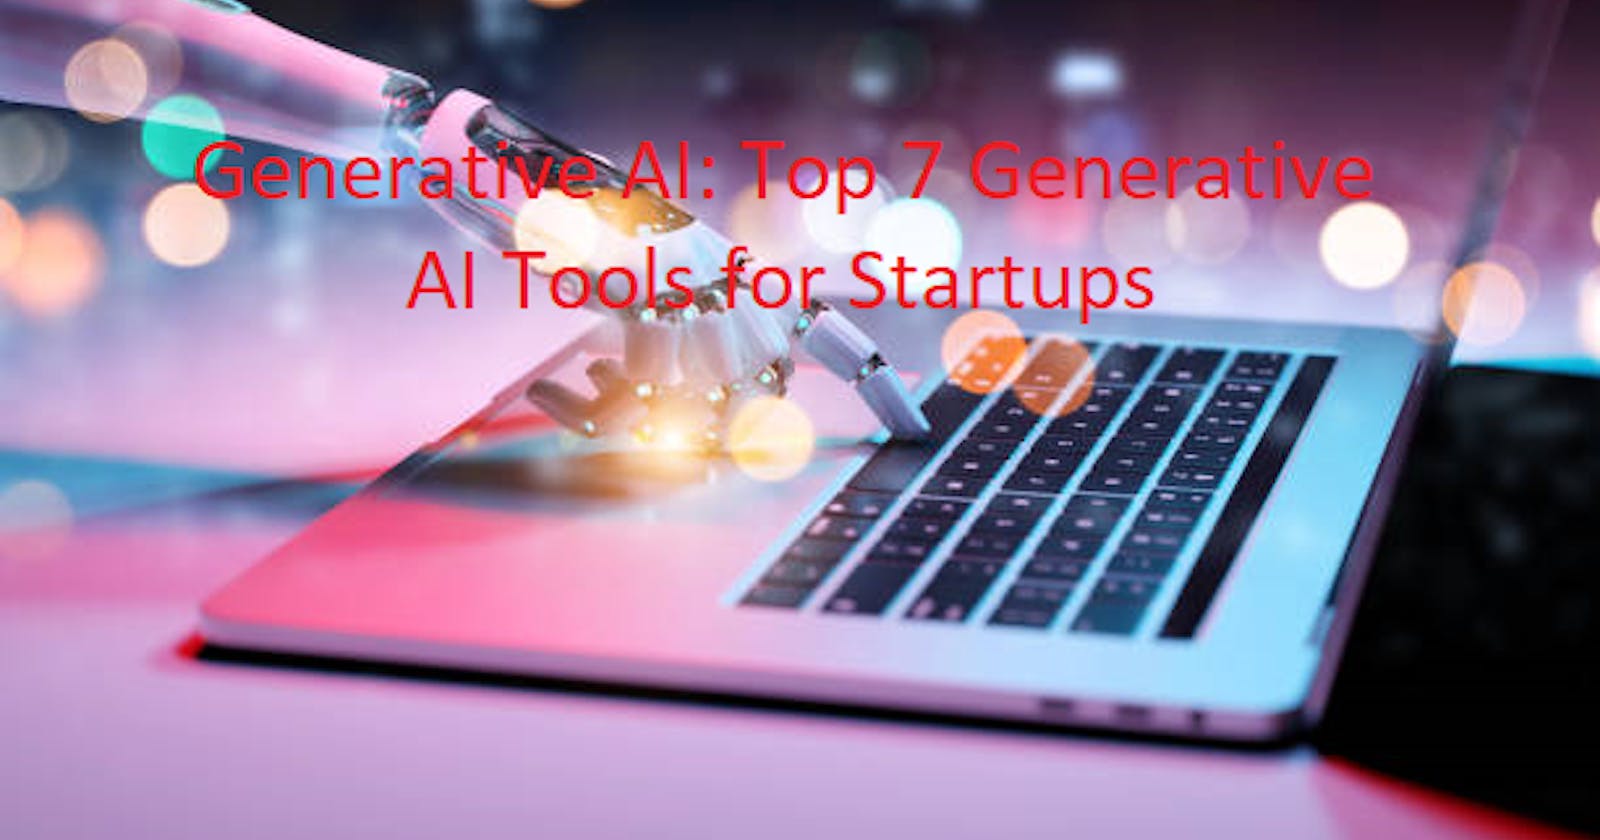 Generative AI: Top 7 Generative AI Tools for Startups